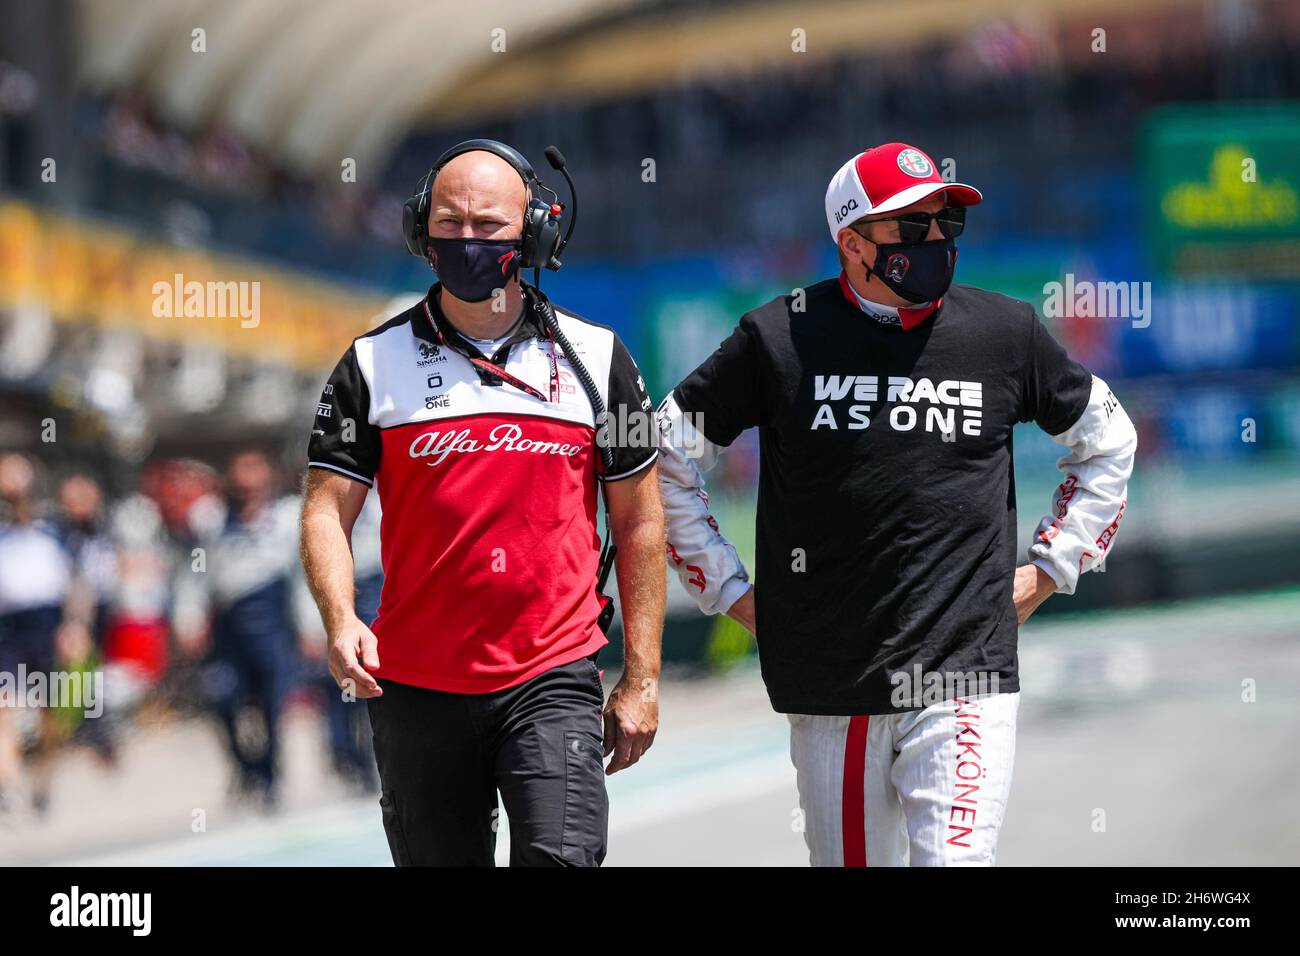 Sao Paulo, Brasil. 14th Nov, 2021. # 7 Kimi Raikkonen (FIN, Alfa Romeo Racing ORLEN), F1 Gran Premio de Brasil en el Autodromo José Carlos Pace el 14 de noviembre de 2021 en Sao Paulo, Brasil. (Foto de HOCH ZWEI) Crédito: dpa/Alamy Live News Foto de stock